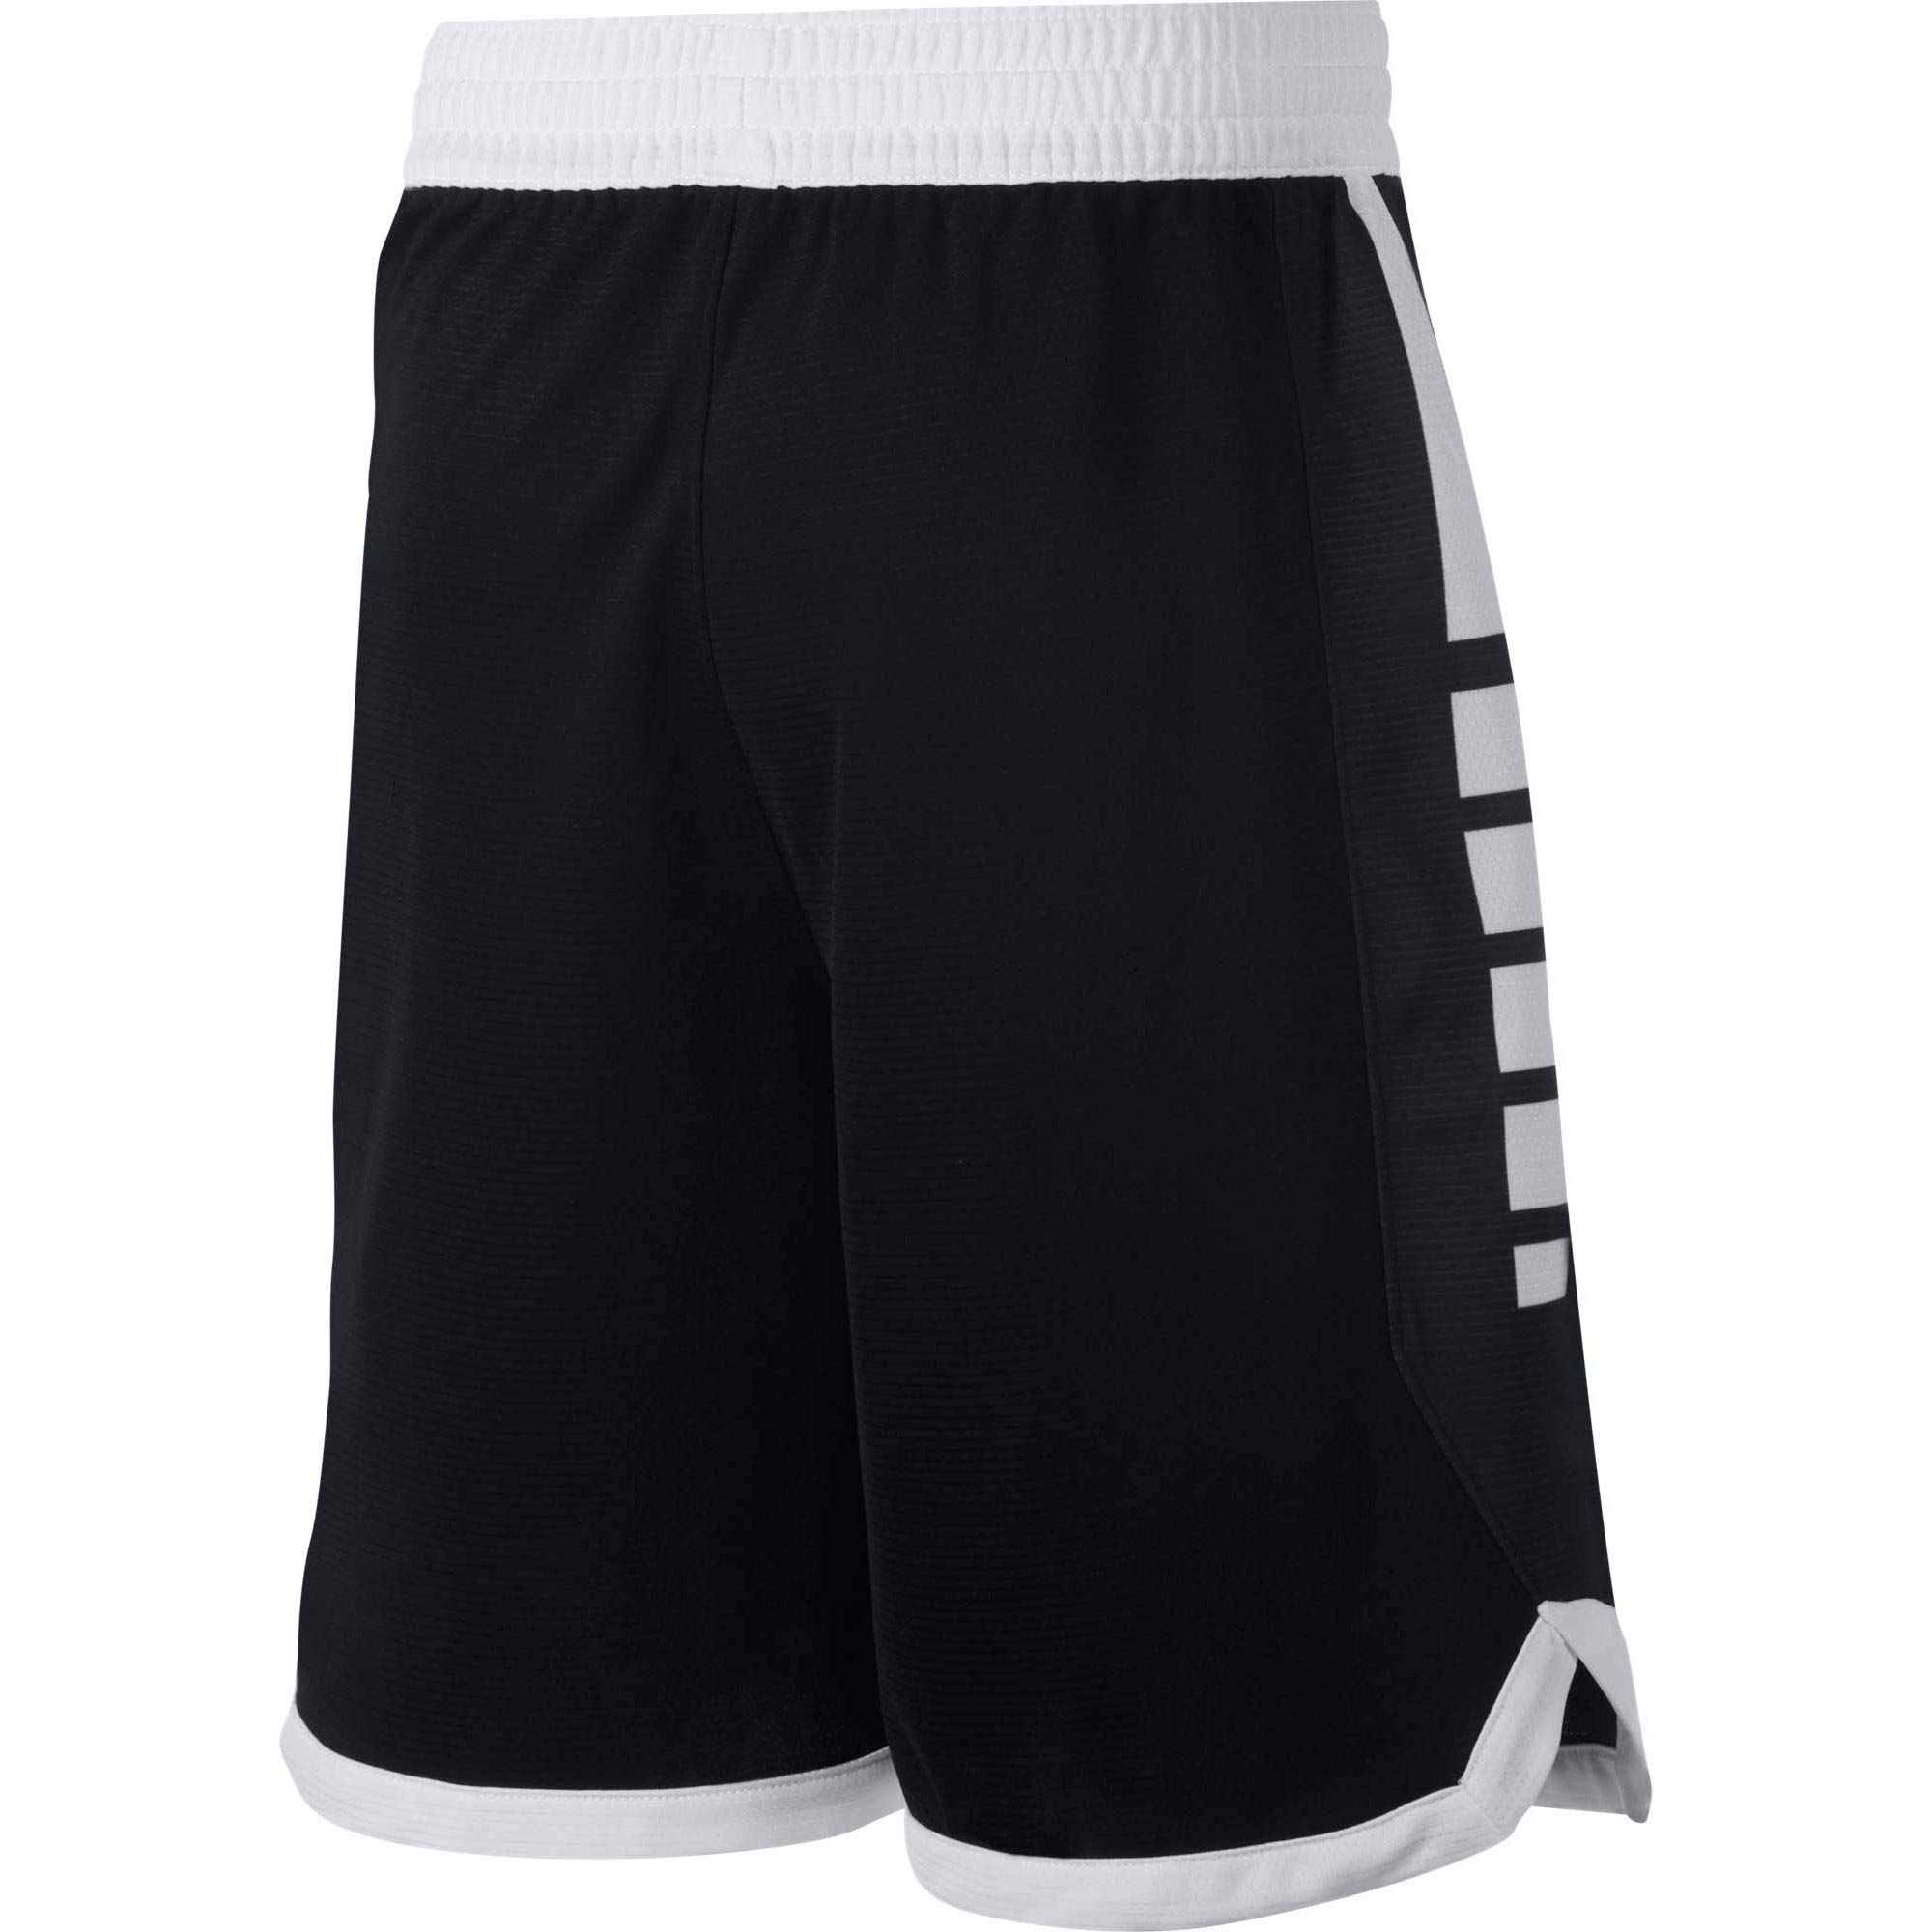 Nike Air Jordan Boys' Mesh Black Shorts